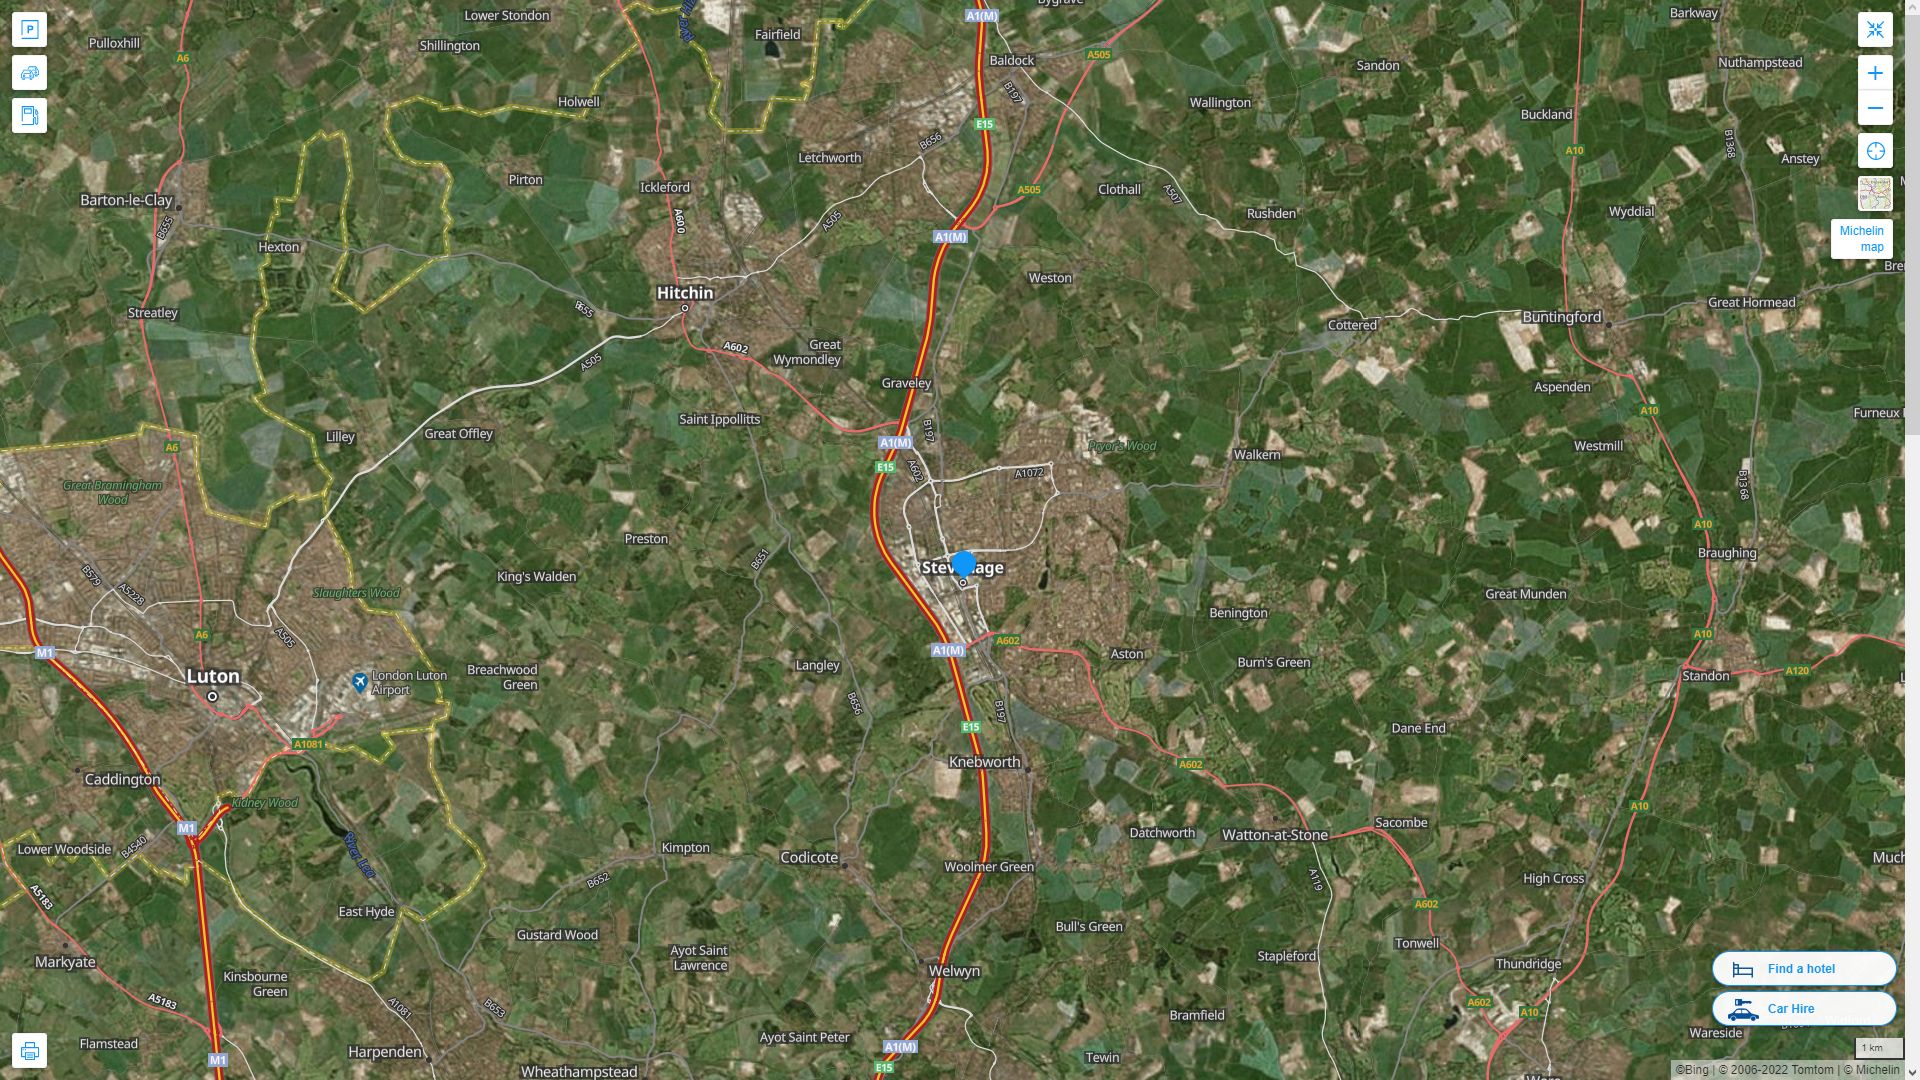 Stevenage Royaume Uni Autoroute et carte routiere avec vue satellite